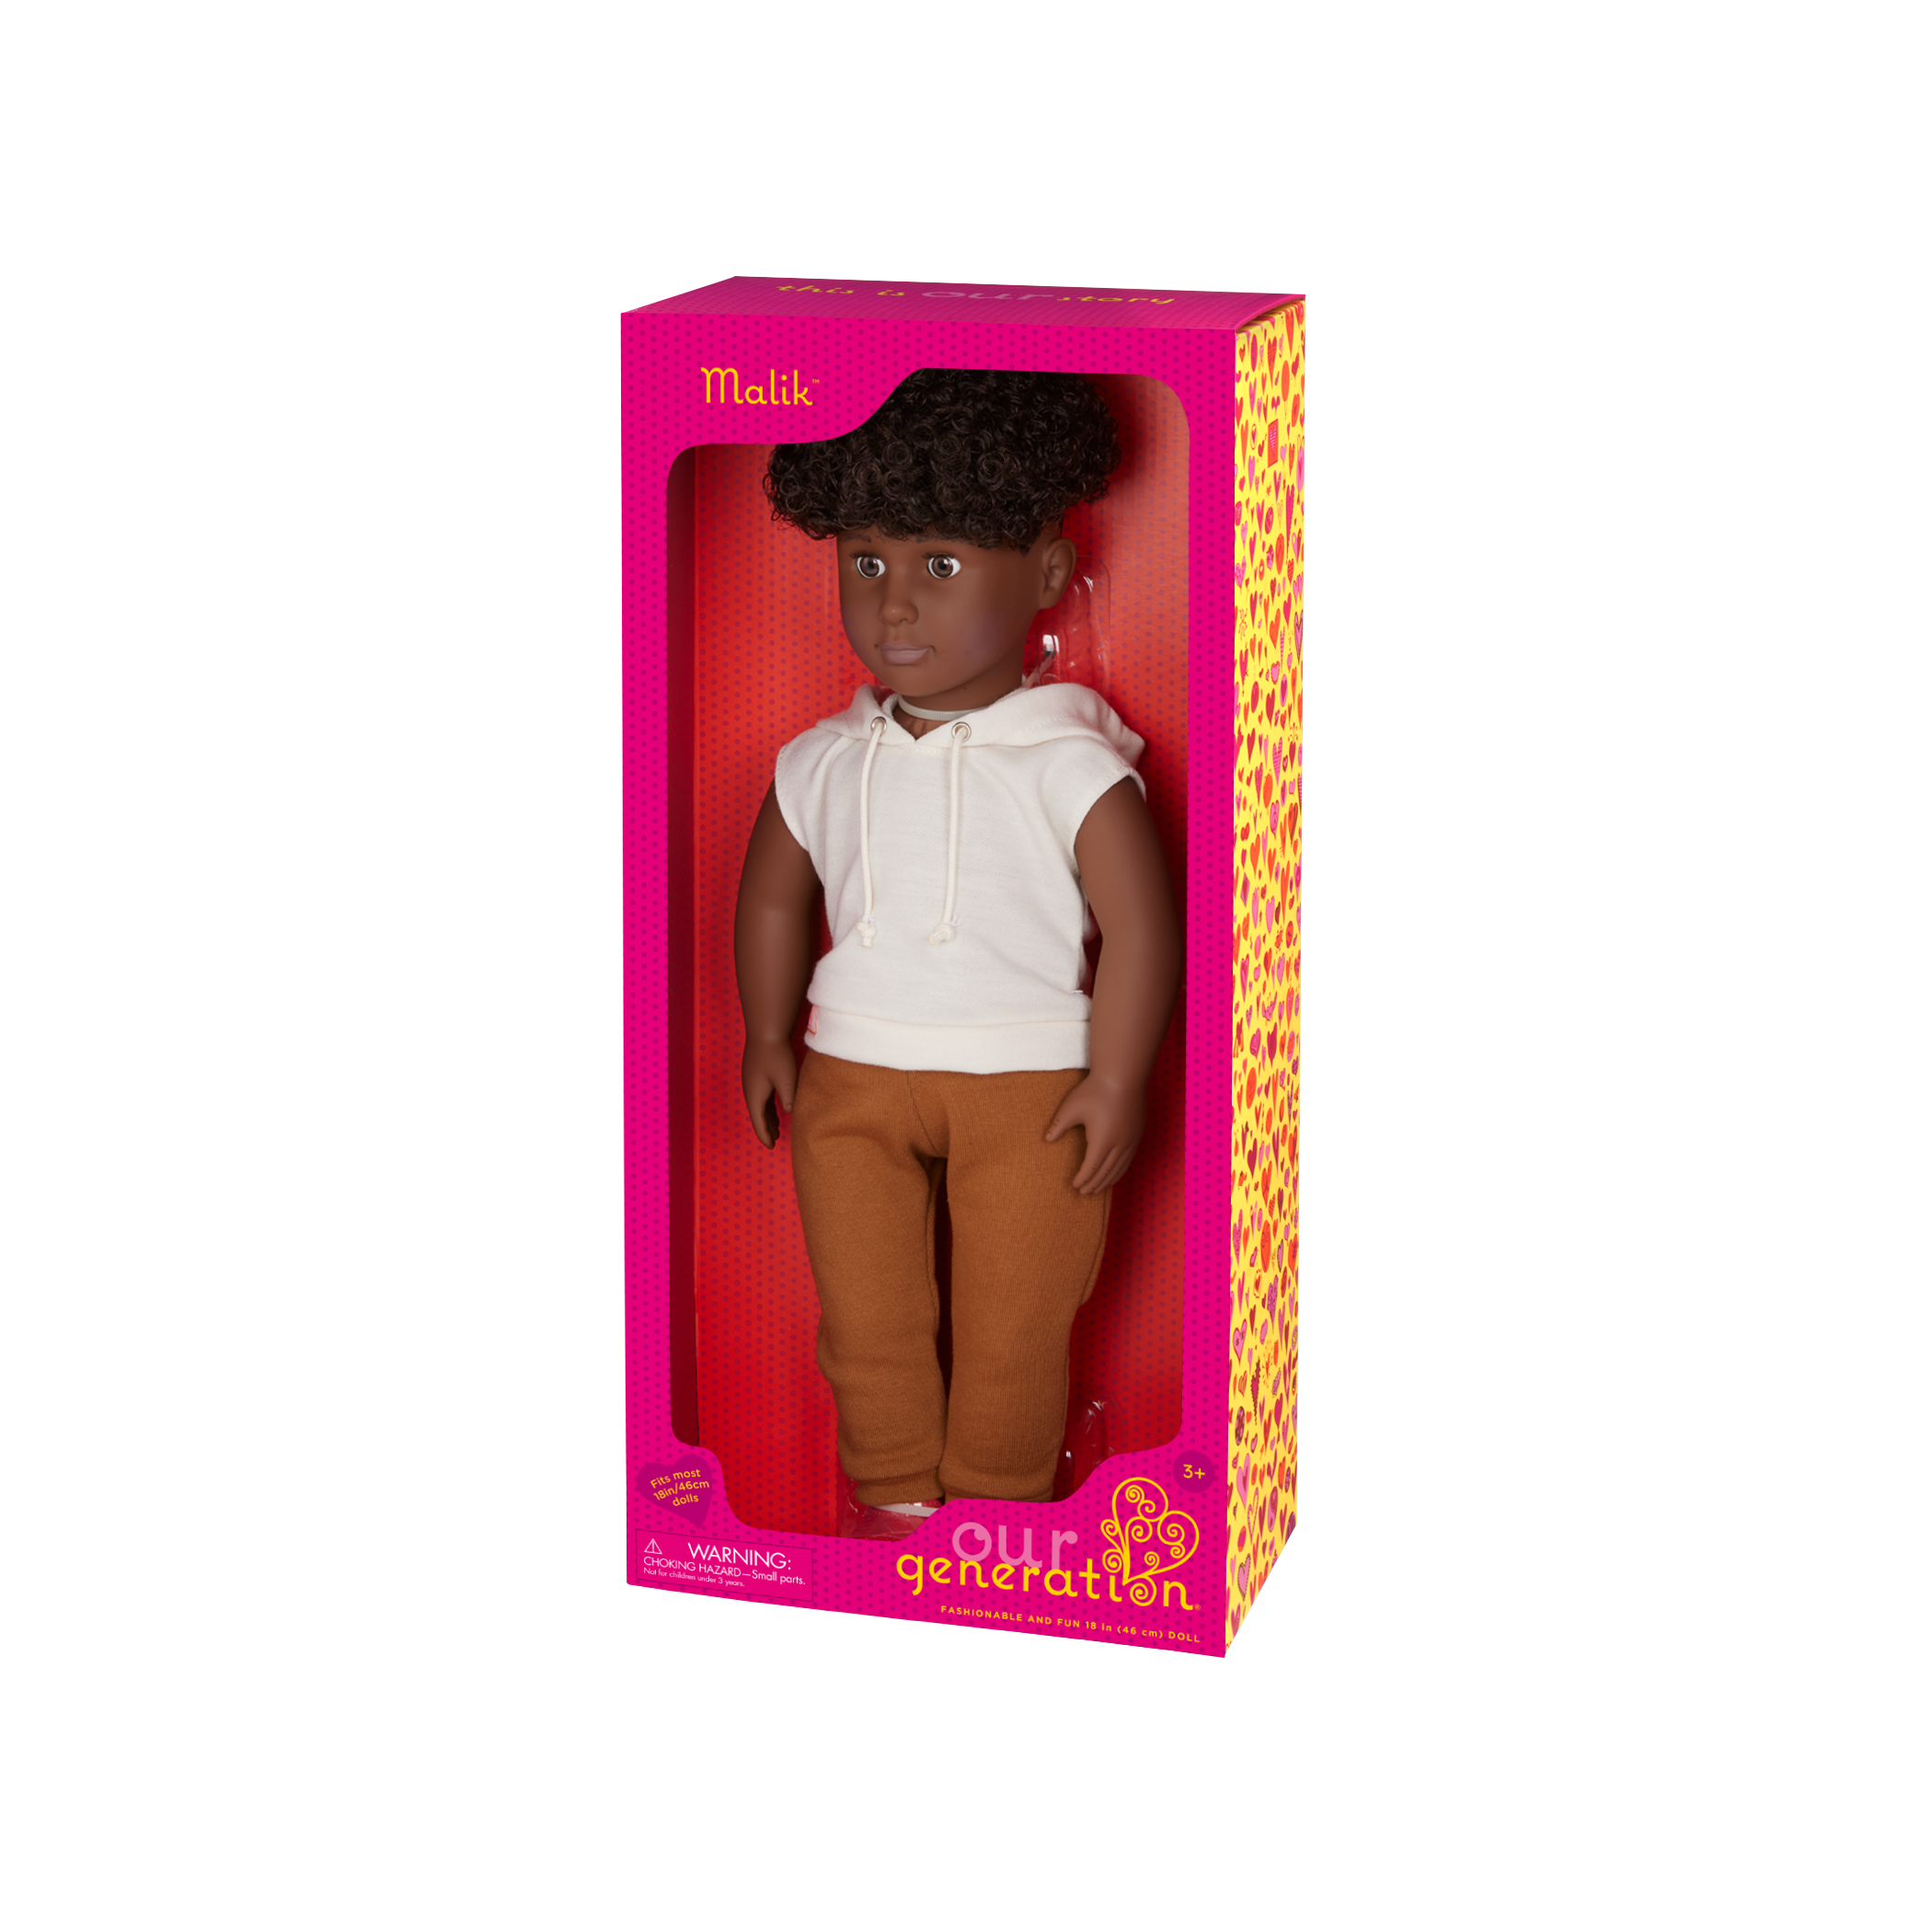 Our Generation 18-inch Boy Doll Malik